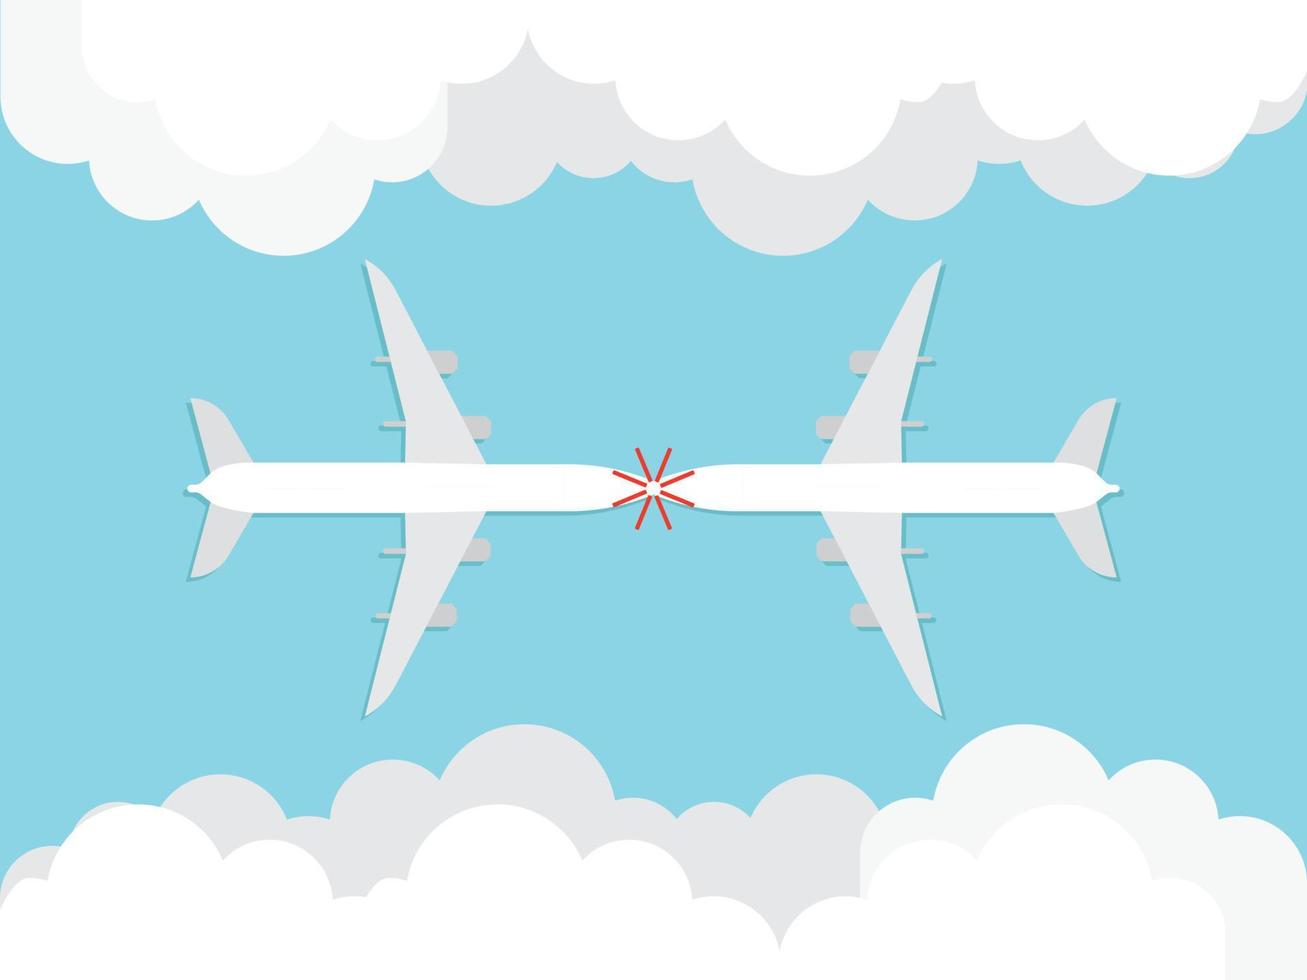 vliegtuigen die uit de wolken komen, botsen. vector